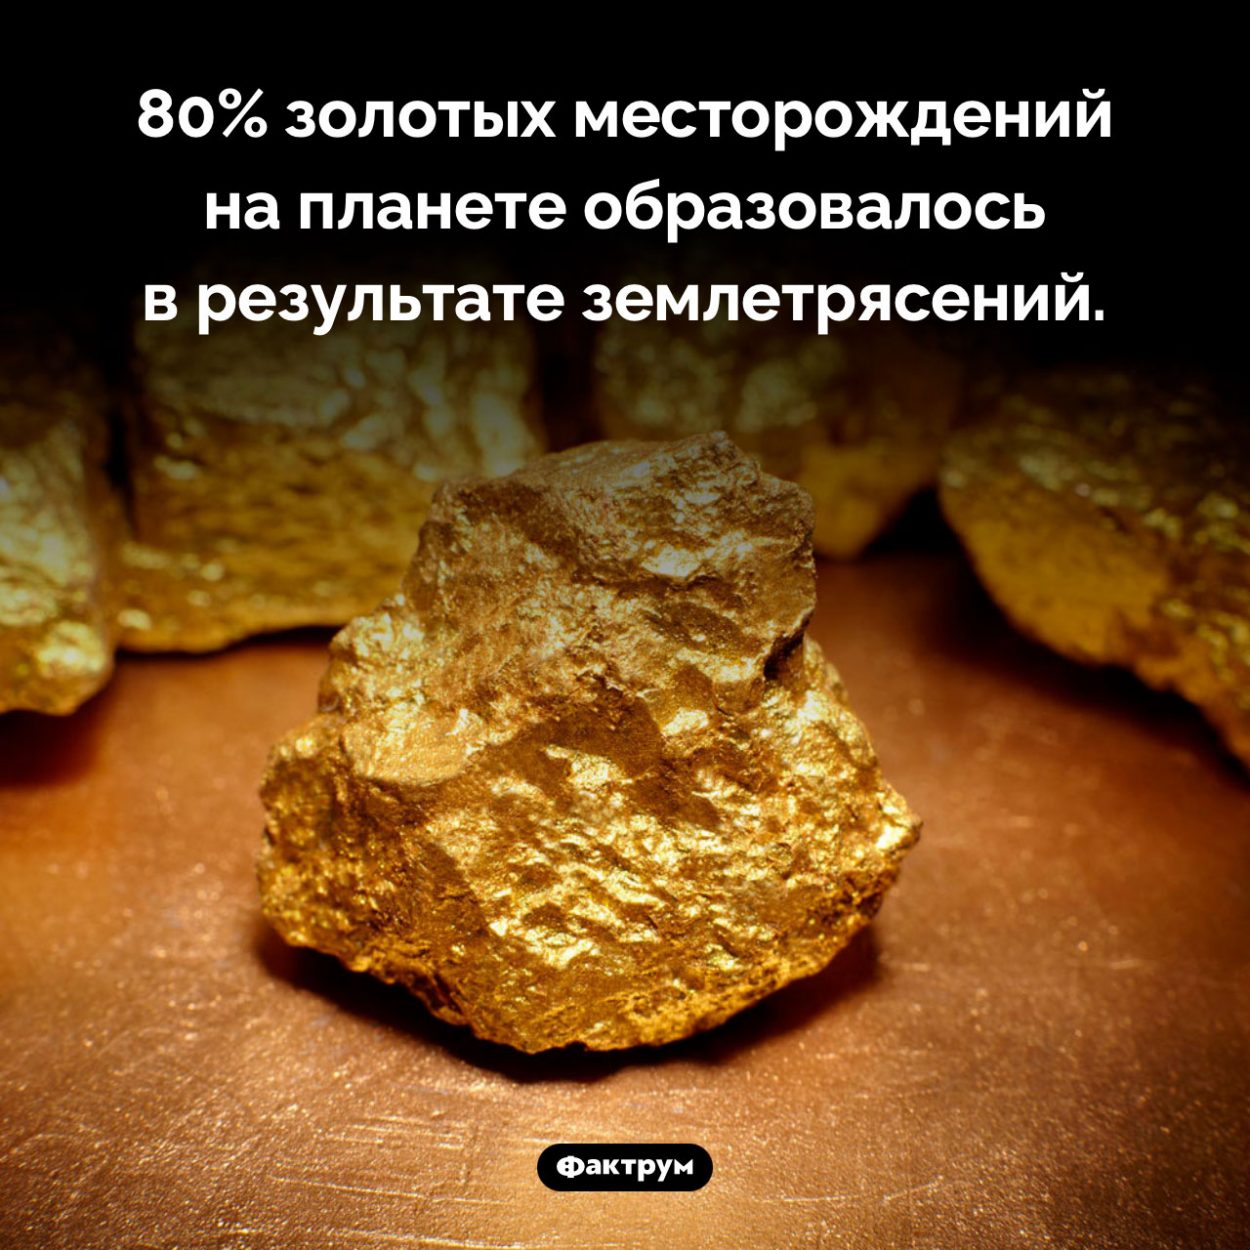 Откуда берется золото на Земле. 80% золотых месторождений на планете образовалось в результате землетрясений.